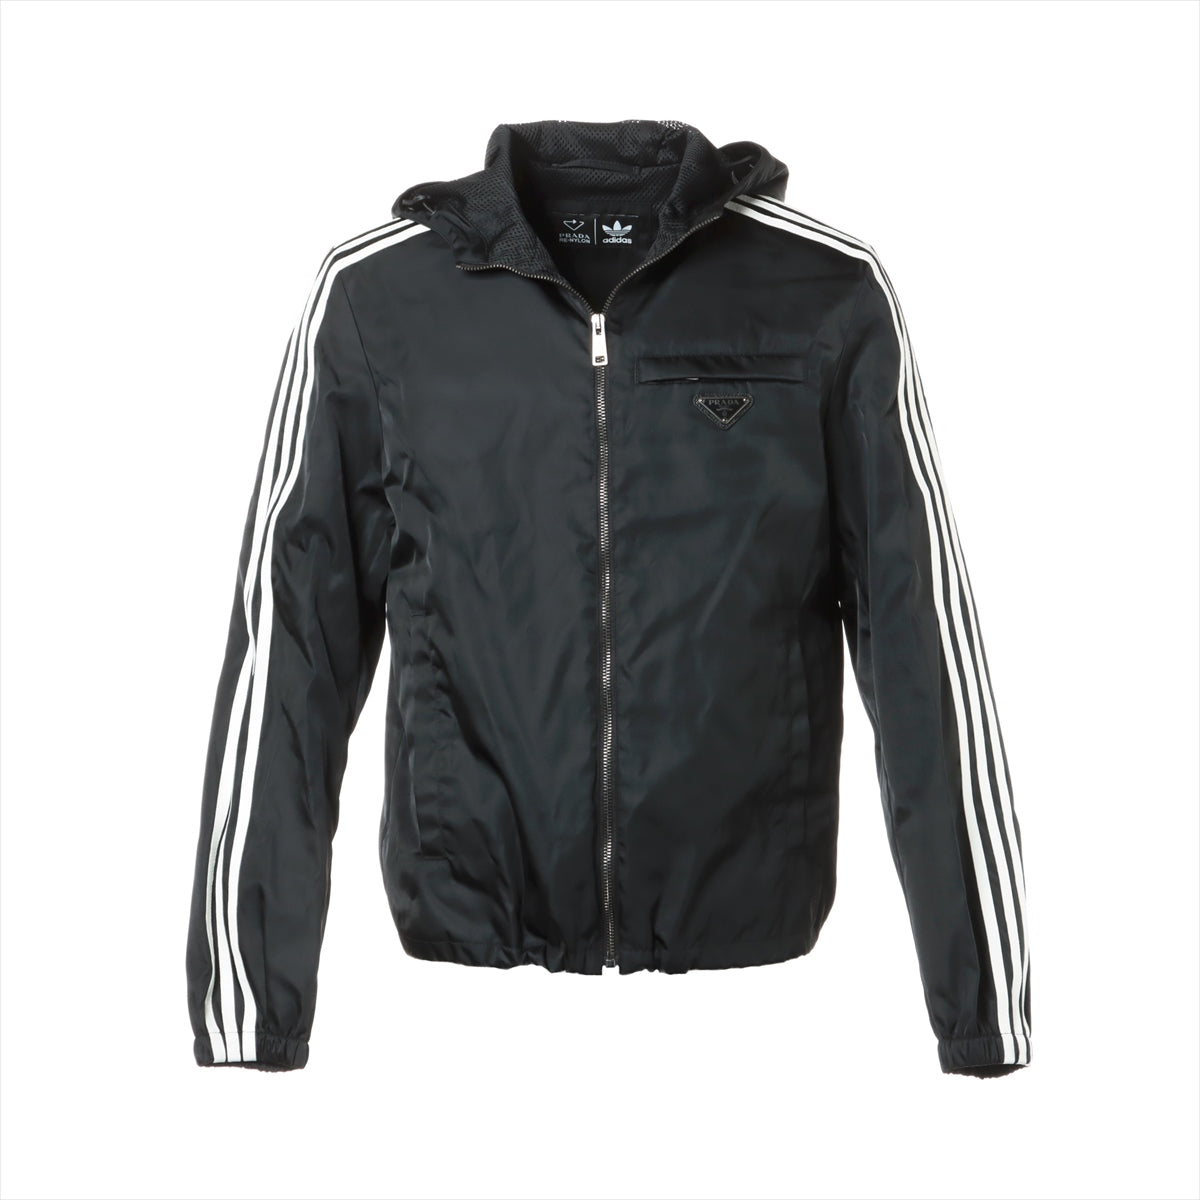 Prada x Adidas Triangle logo 21AW Nylon Blouson 44 Men's Black  RE-NYLON track jacket SGB964